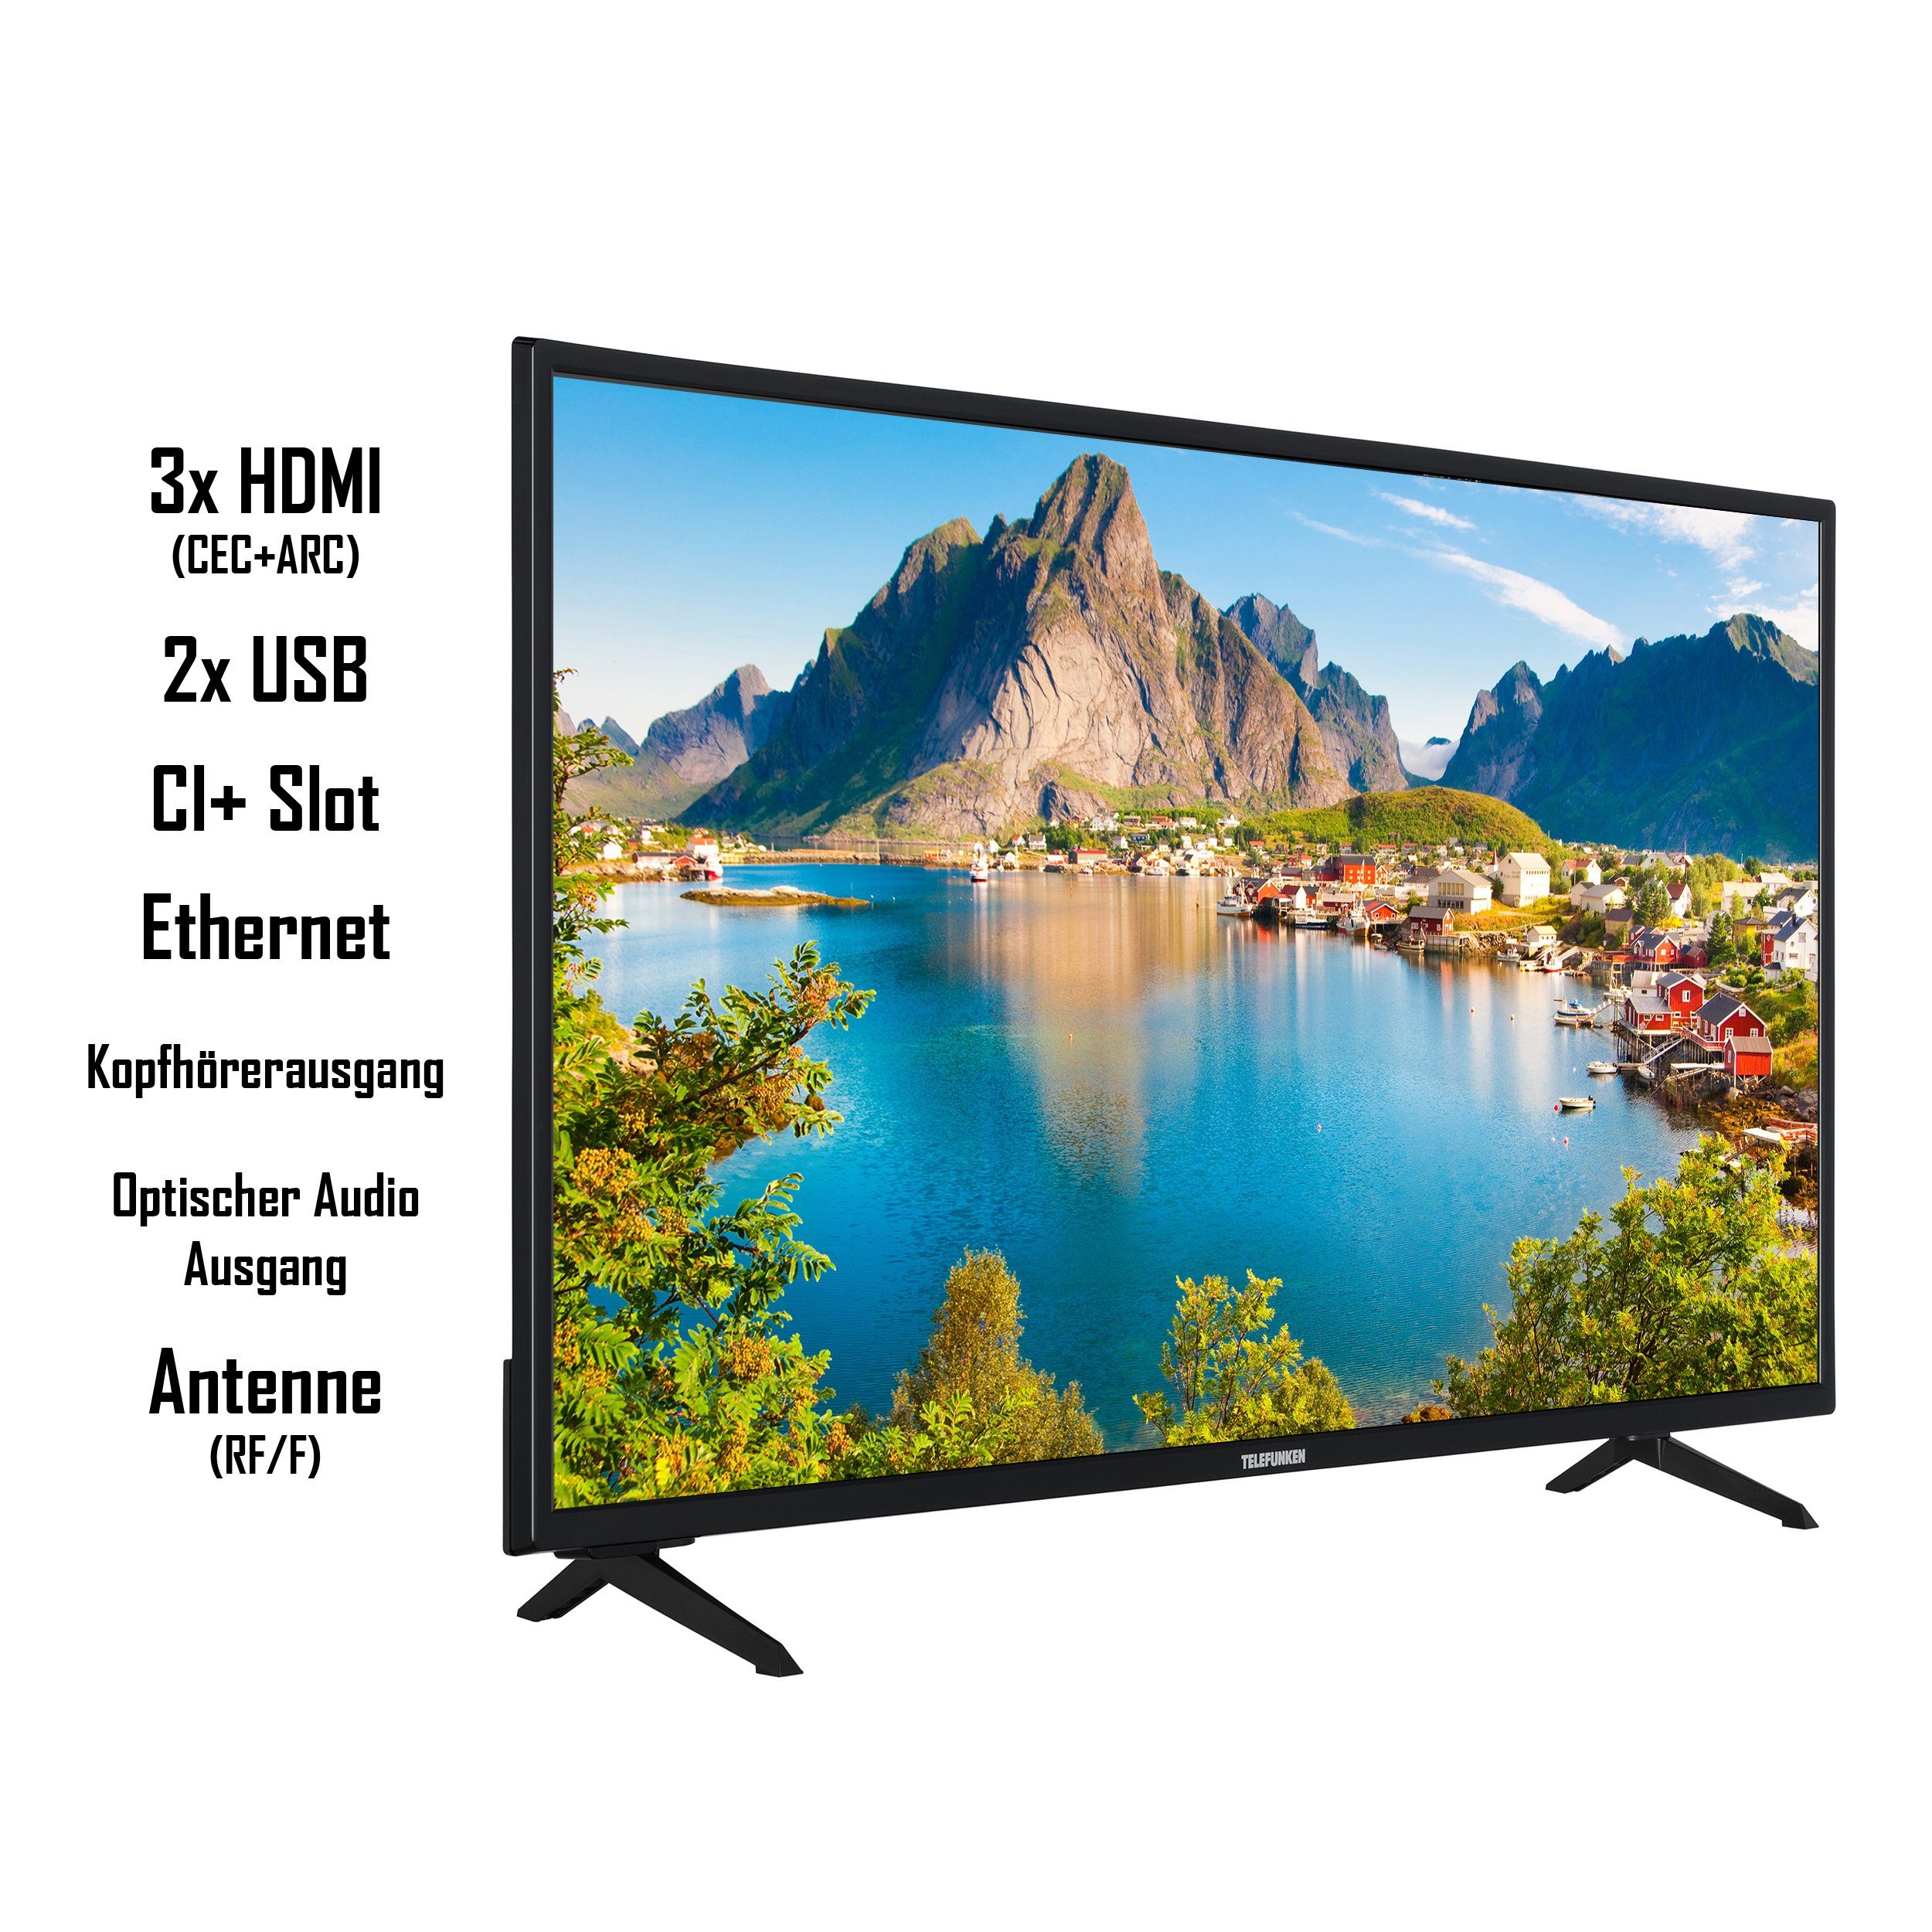 Telefunken XU43SN550S Dolby 4K Atmos, HD+ 6 cm/43 inkl) TV, LCD-LED Smart Fernseher Ultra (108 Zoll, HD, Monate HDR, Triple-Tuner